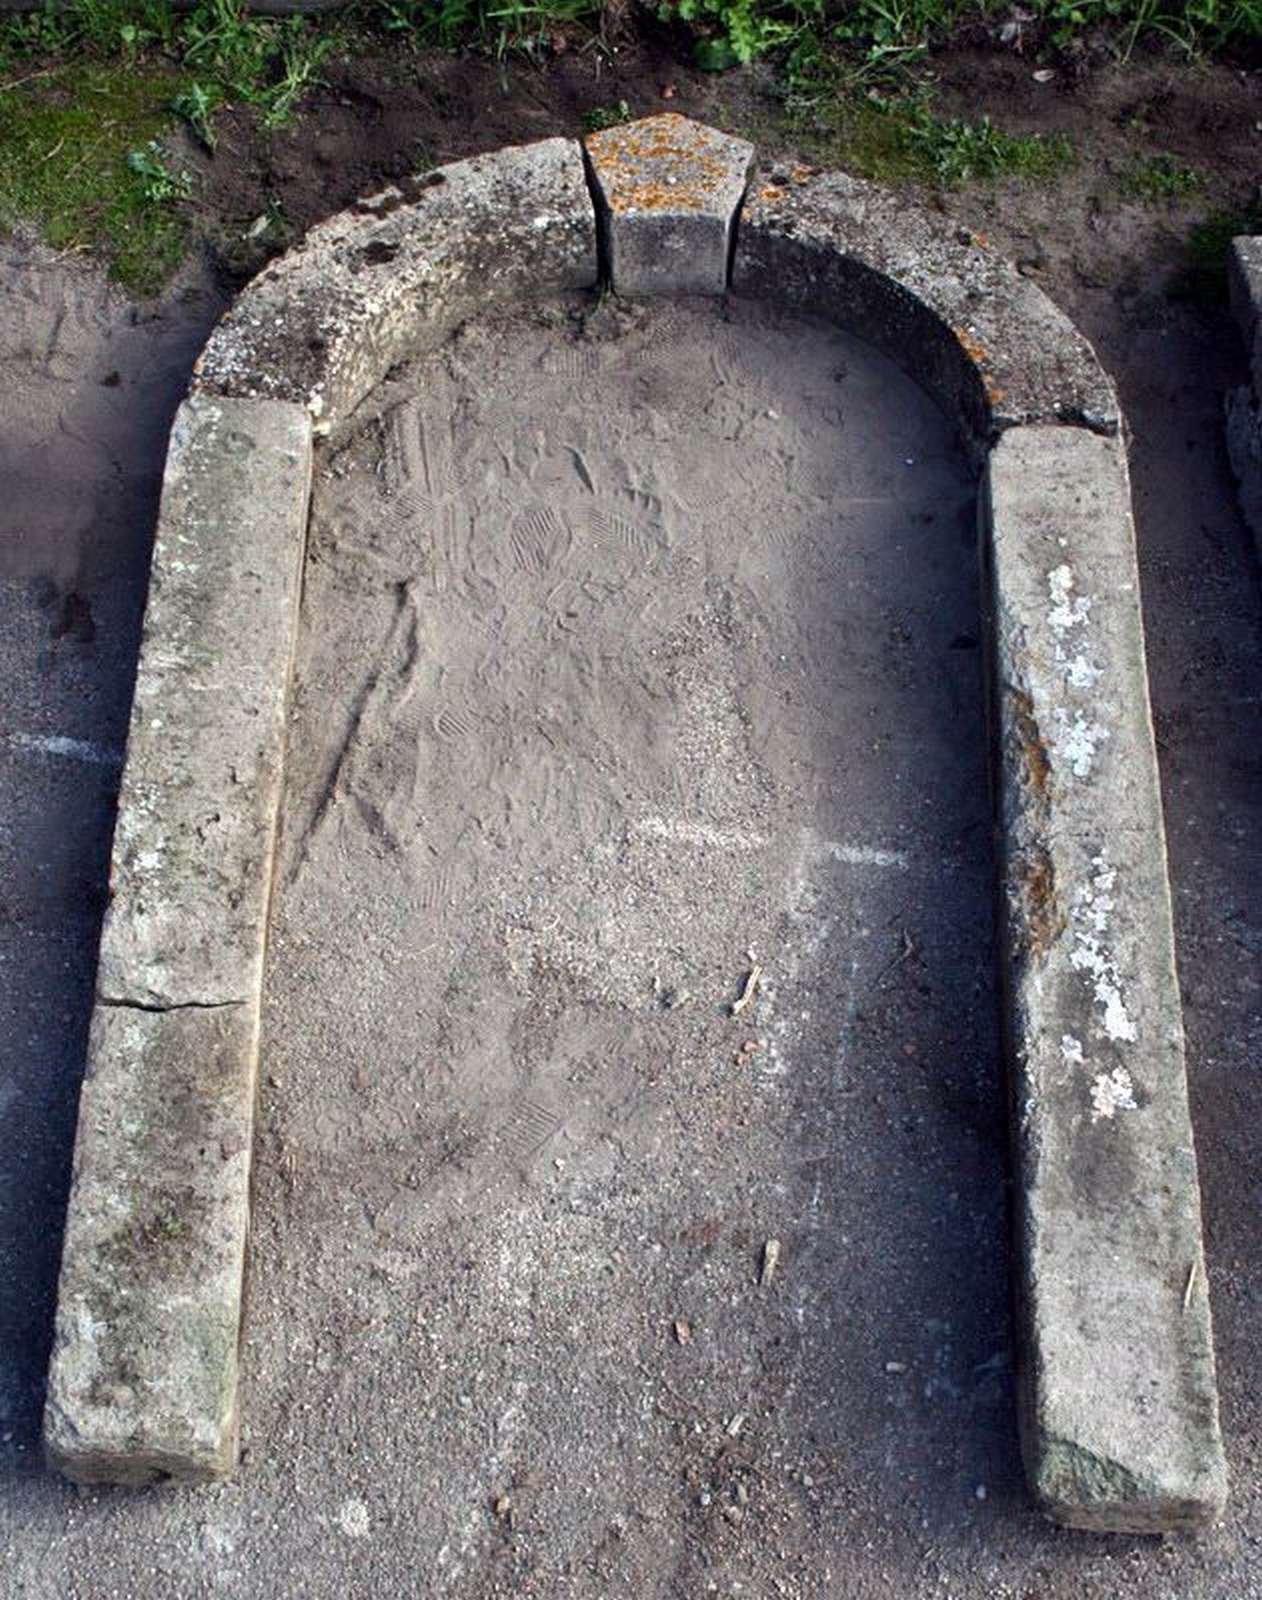 Antico portale in pietra - Portali, Finestre e Cornici - Architettura - Prodotti - Antichità Fiorillo